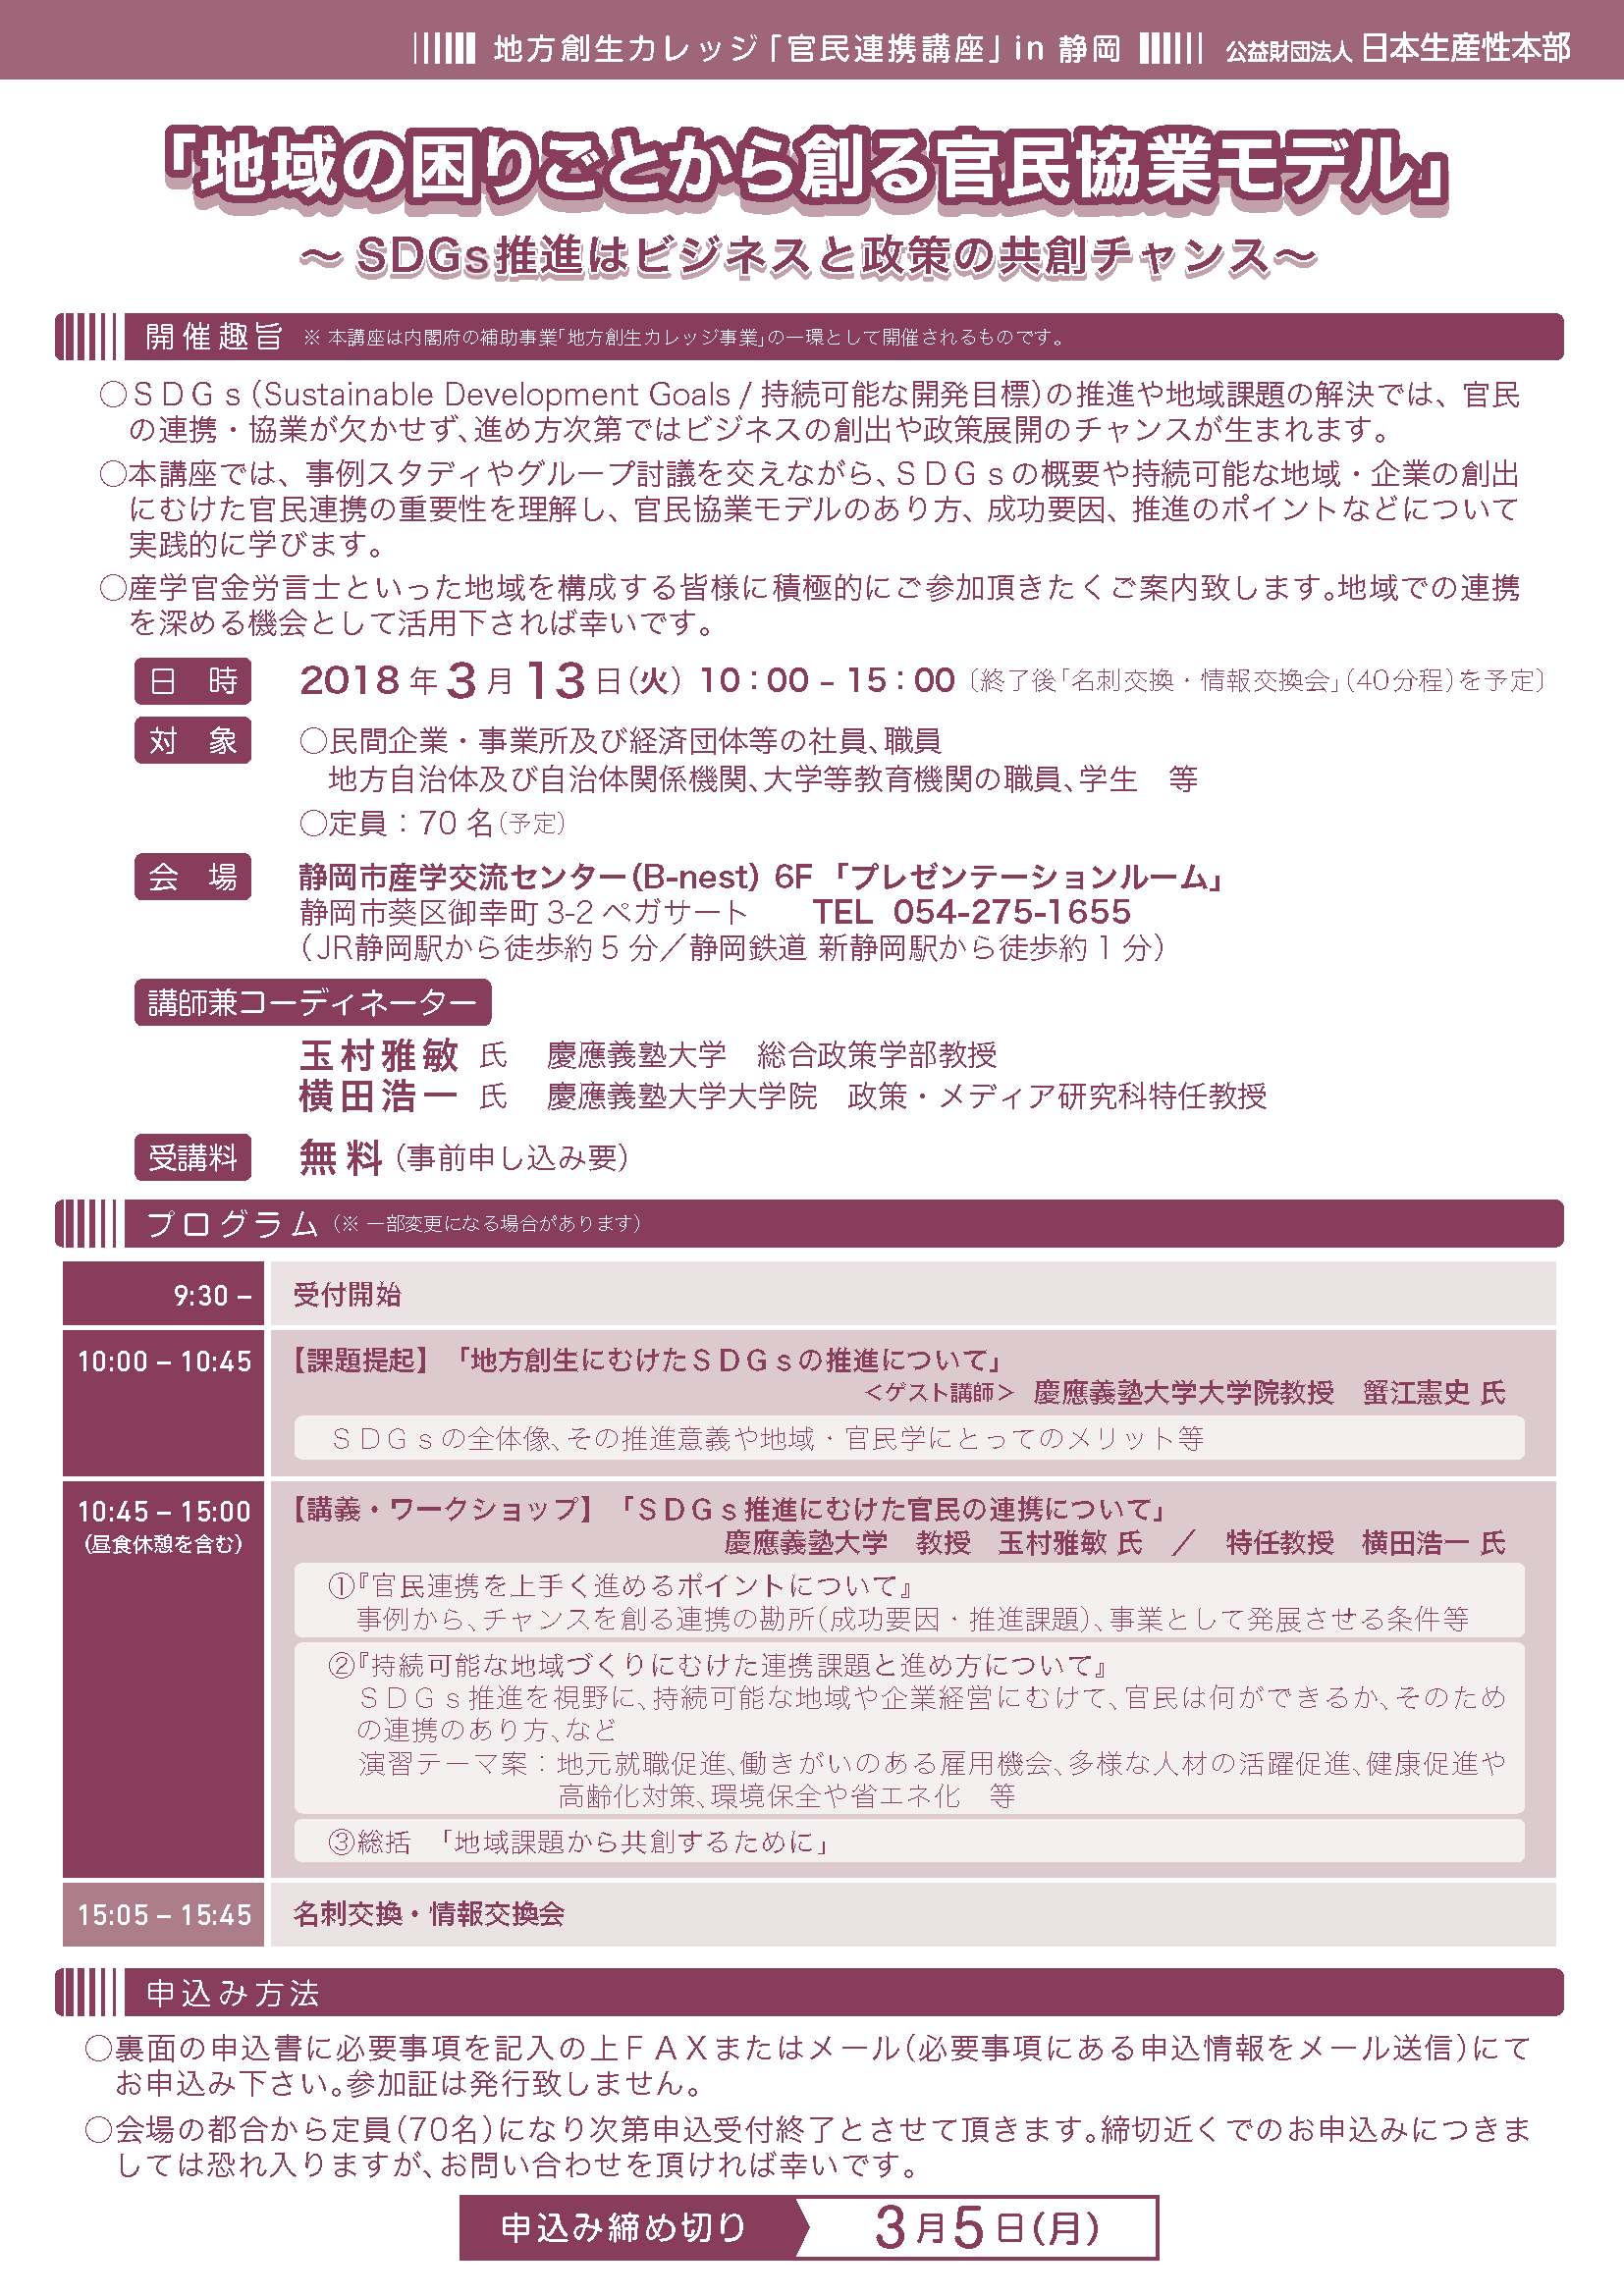 seminar20180313inShizuoka.png